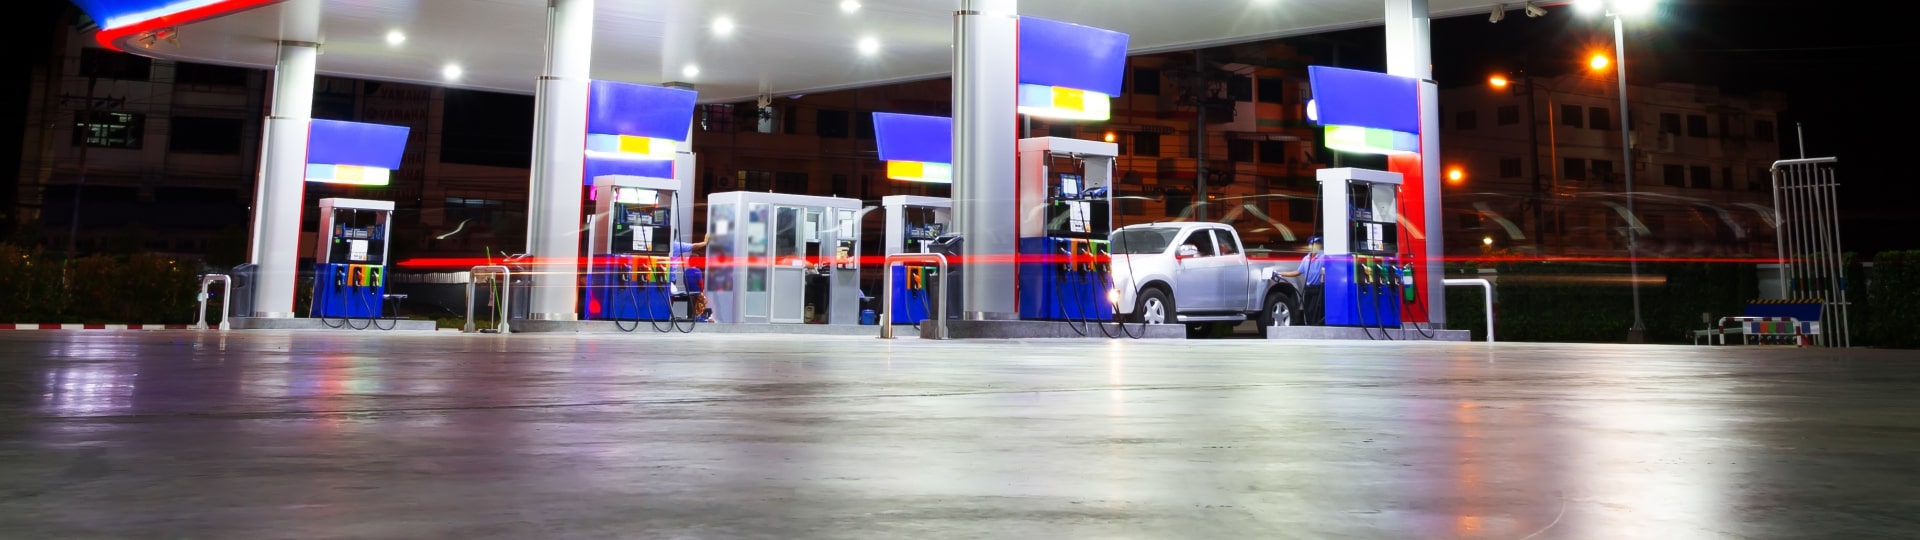 Ceny benzínu a nafty klesají. V průběhu července však opět začnou růst